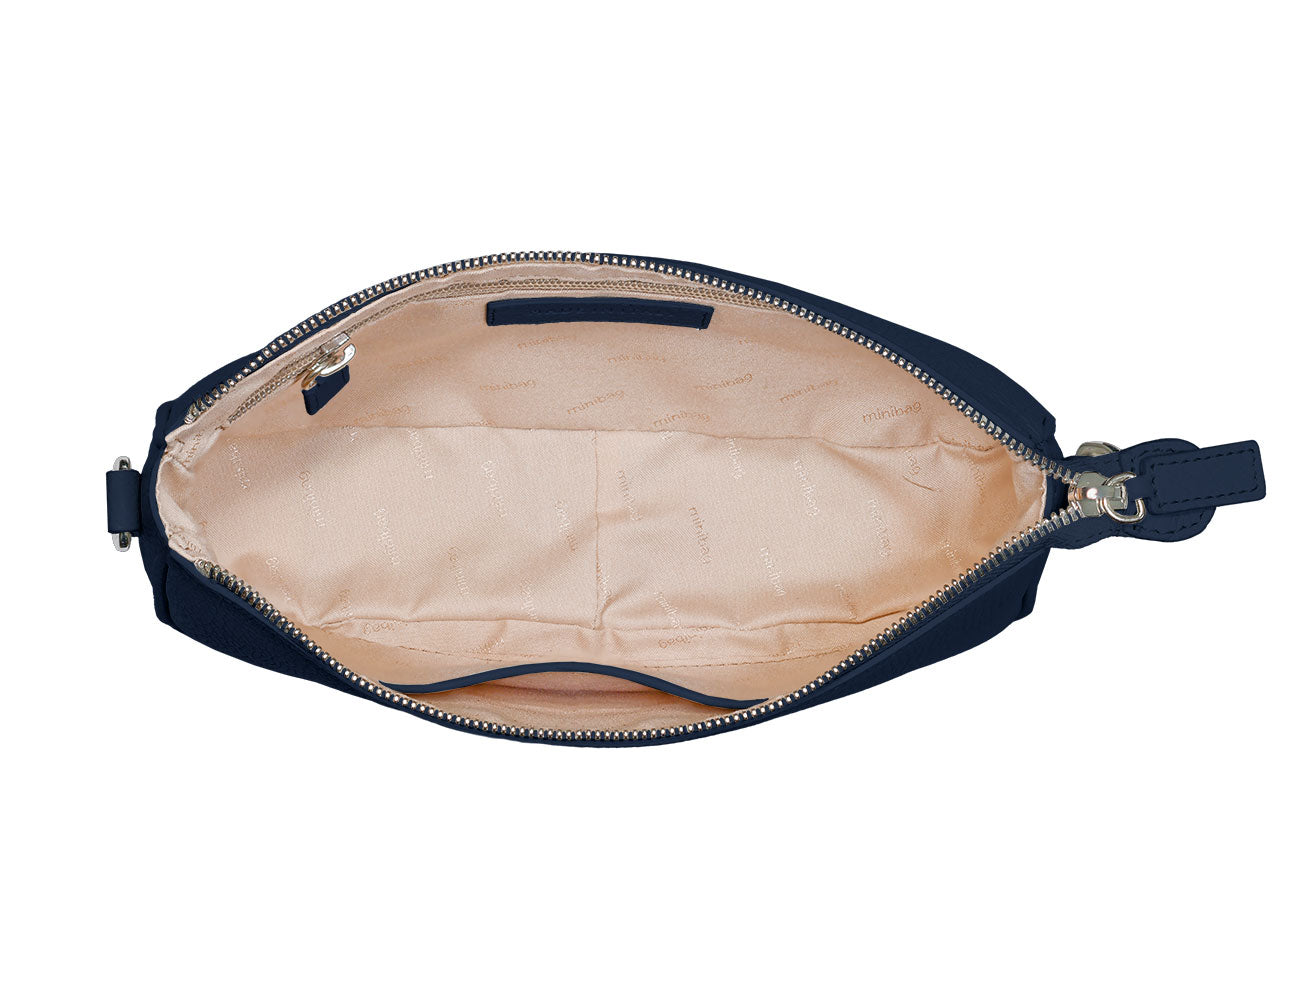 minibag Ledertasche Clutch Kate in der Farbe navy innenleben